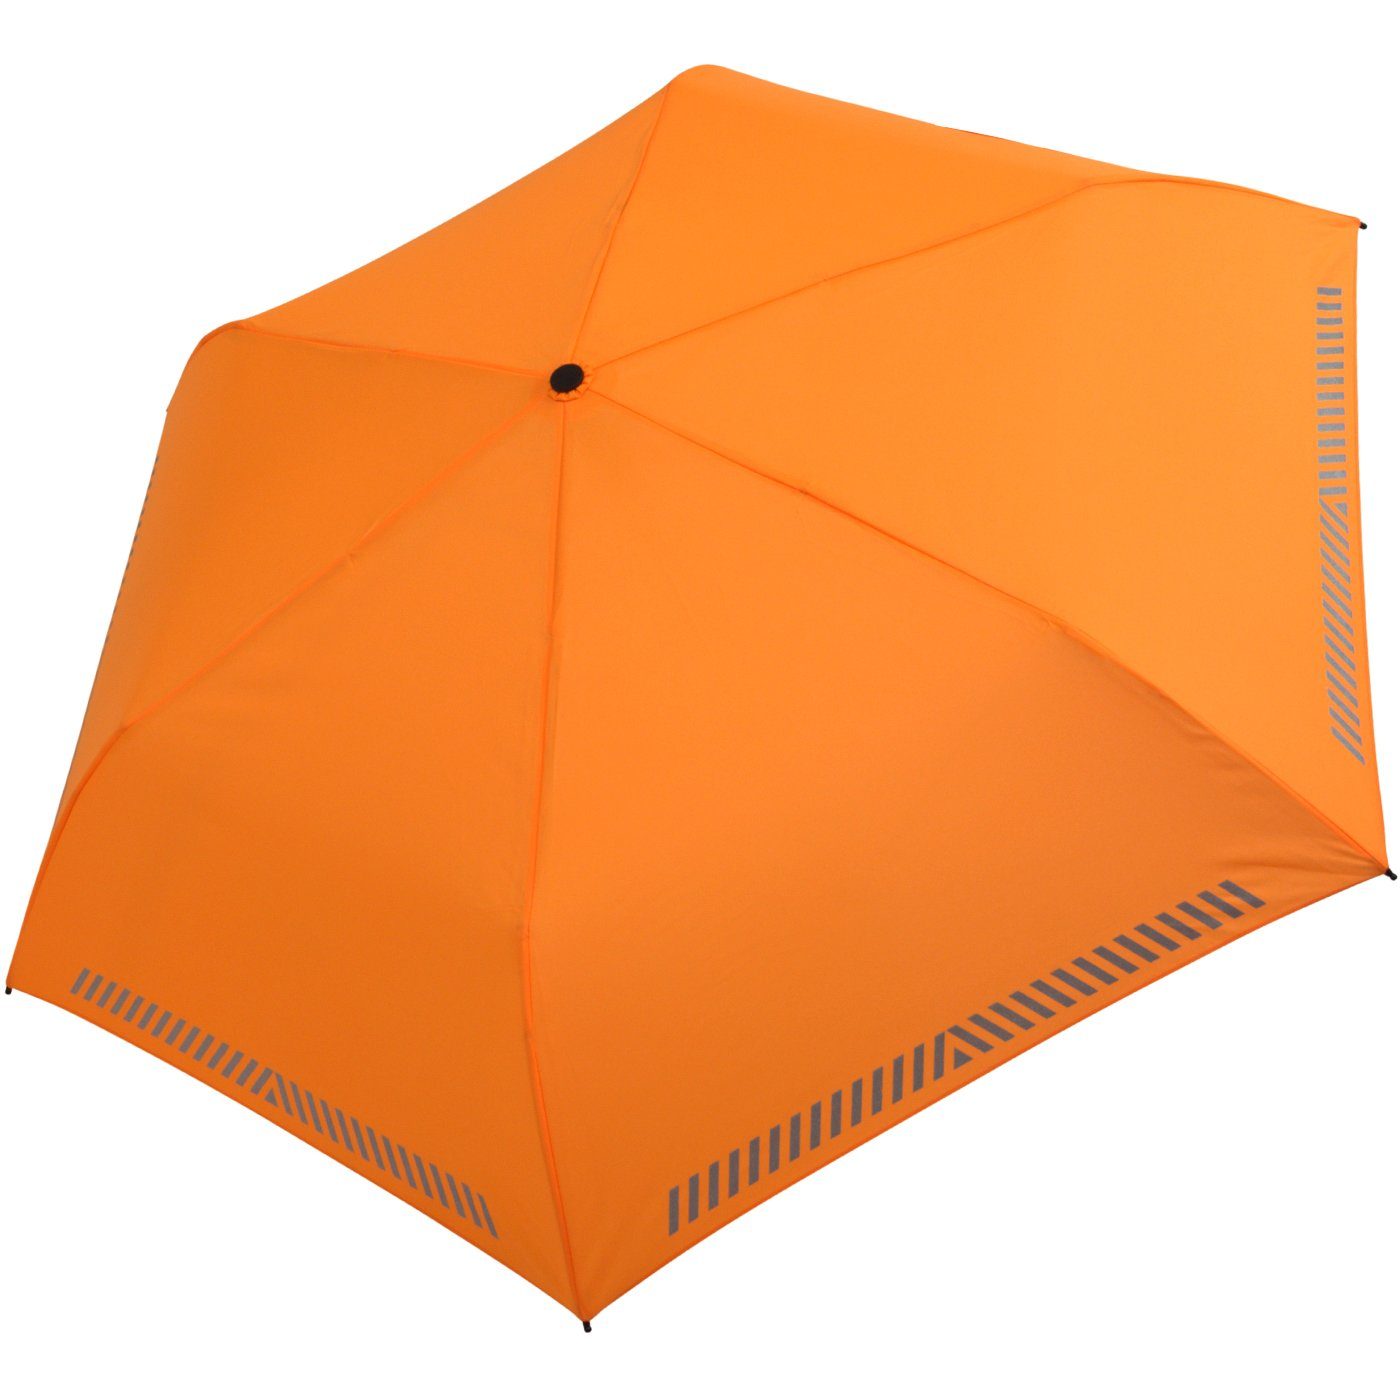 iX-brella Taschenregenschirm Kinderschirm mit Auf-Zu-Automatik,  reflektierend, Sicherheit durch Reflex-Streifen - neon orange